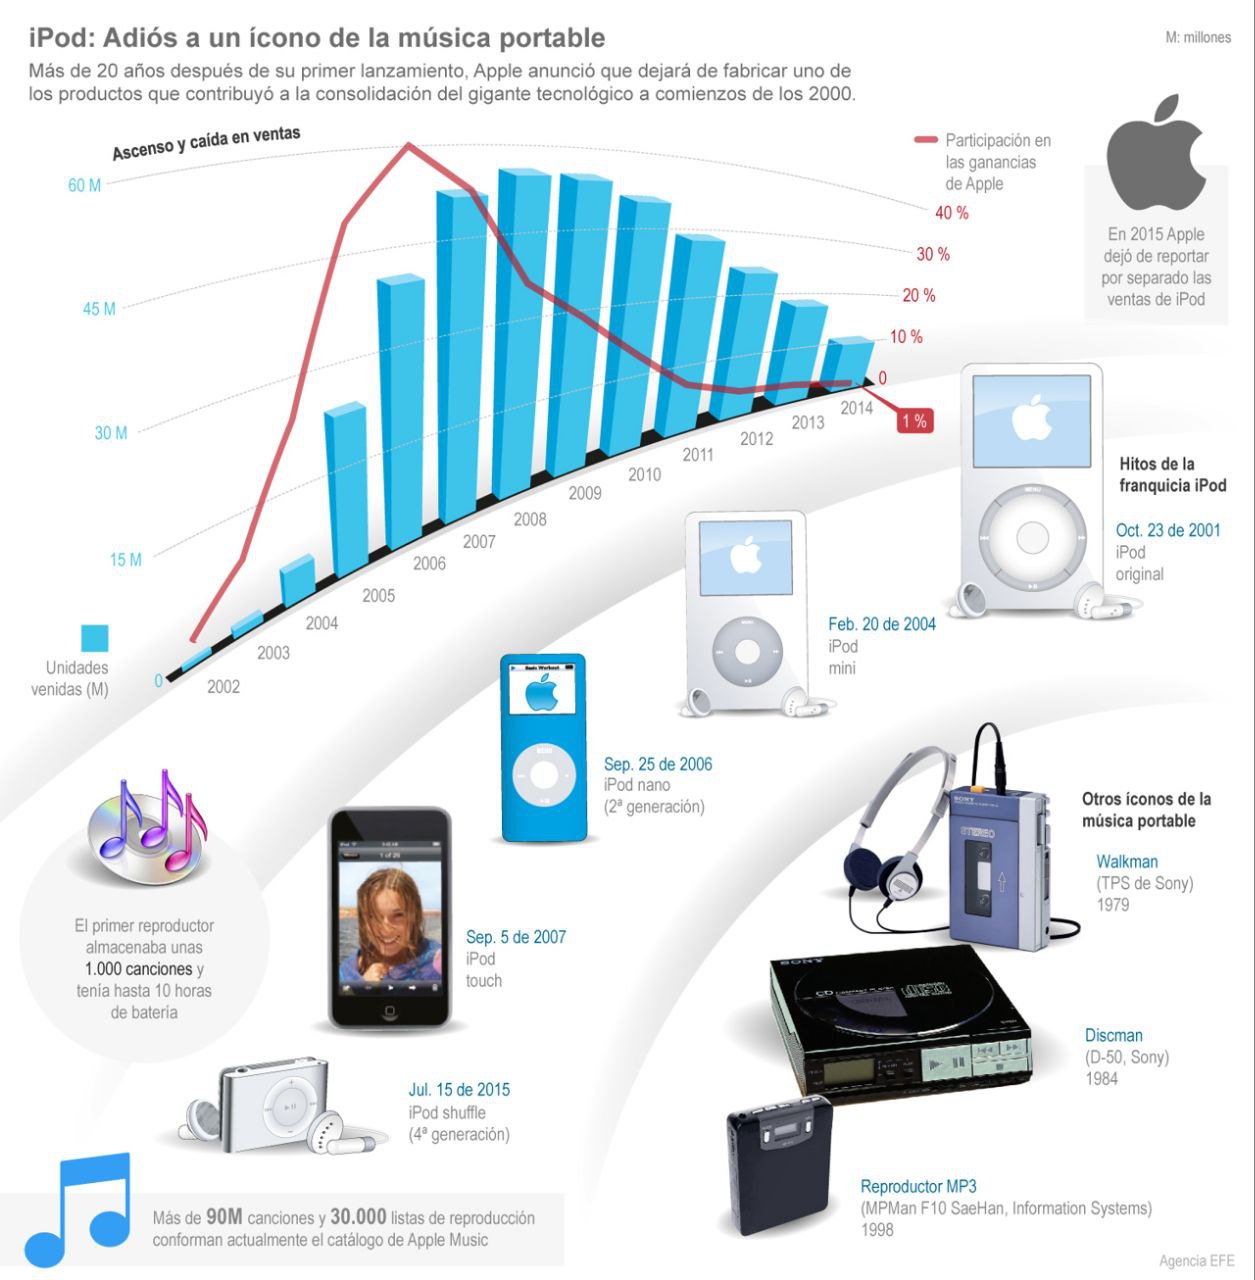 [Infografía] Apple deja de producir iPod más de 20 años después 1